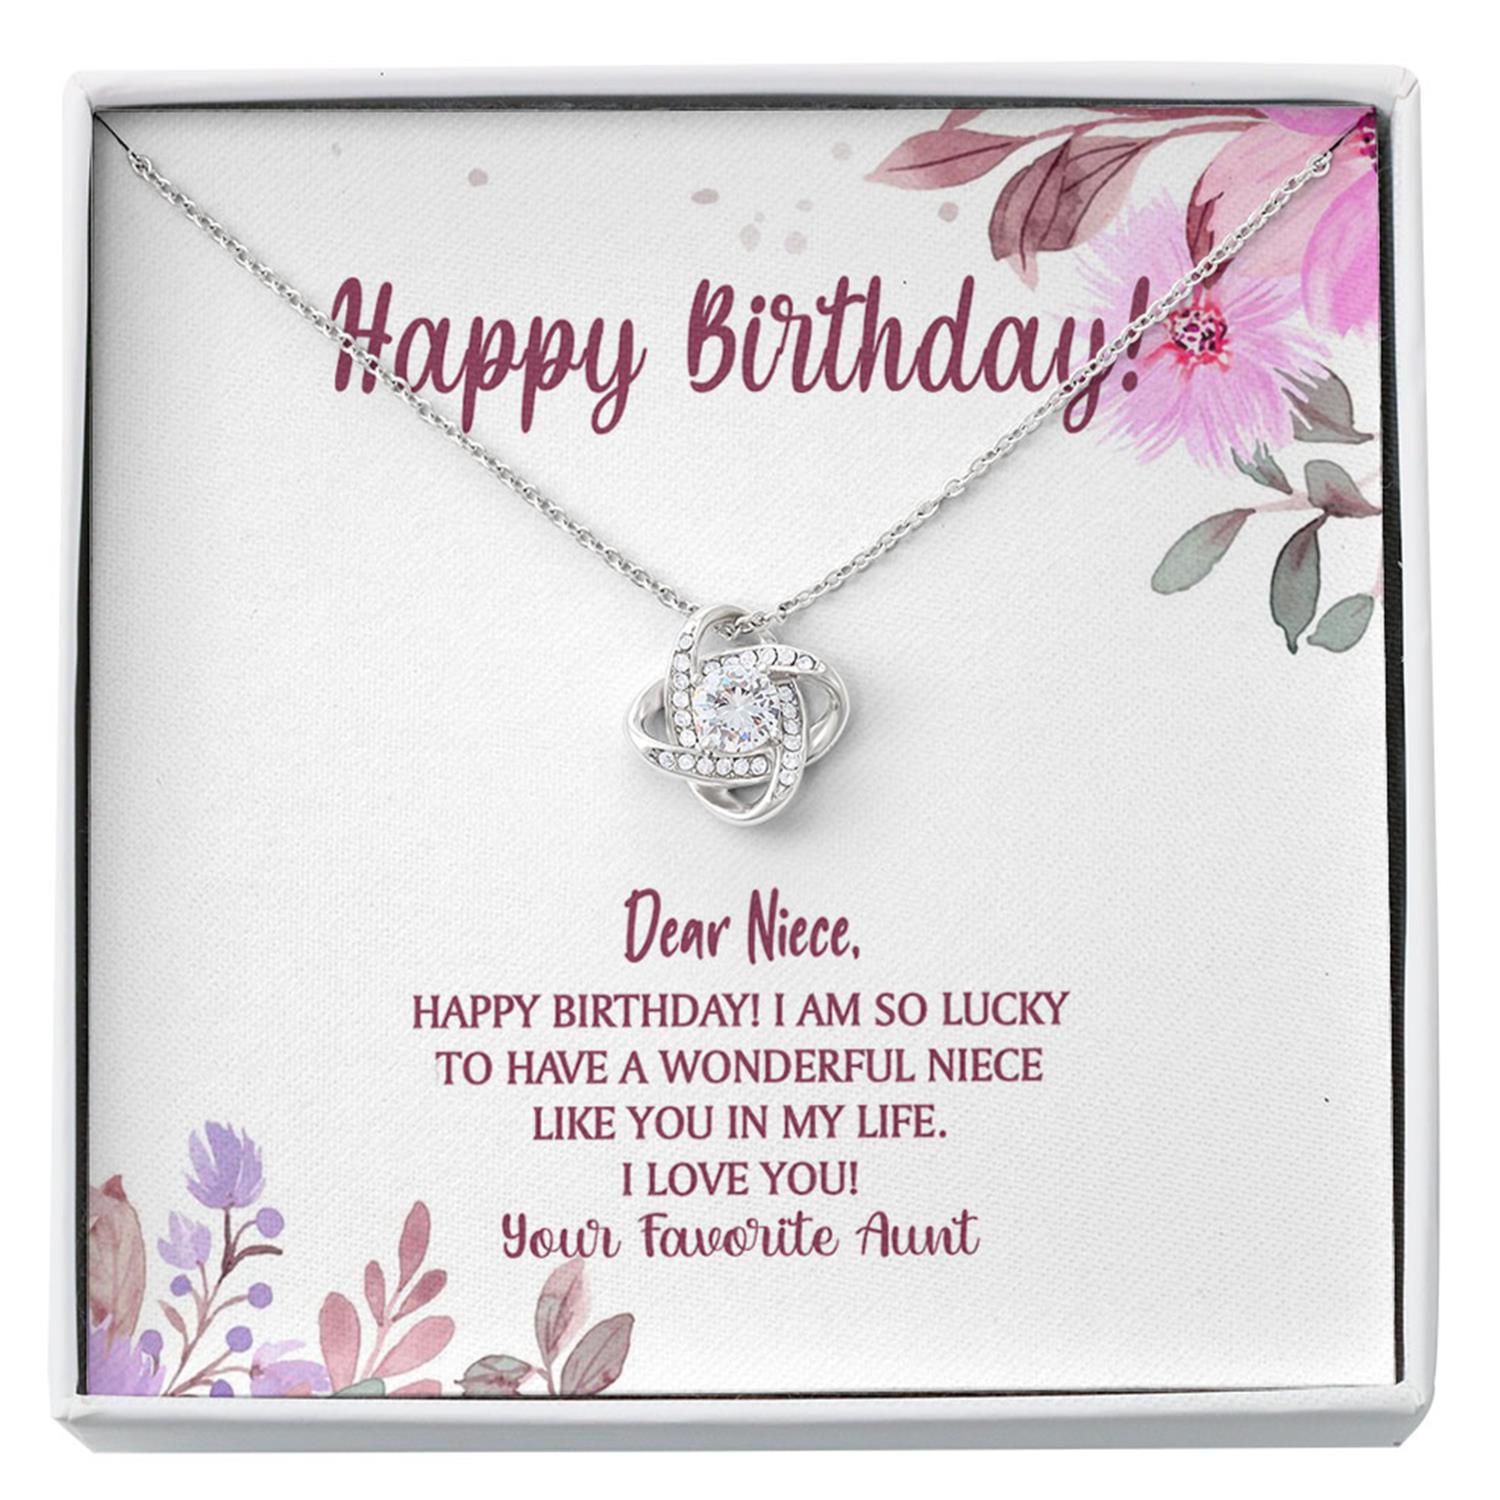 Niece Necklace, Happy Birthday Niece Necklace, Niece Birthday Gift, Birthday Niece From Aunt Custom Necklace